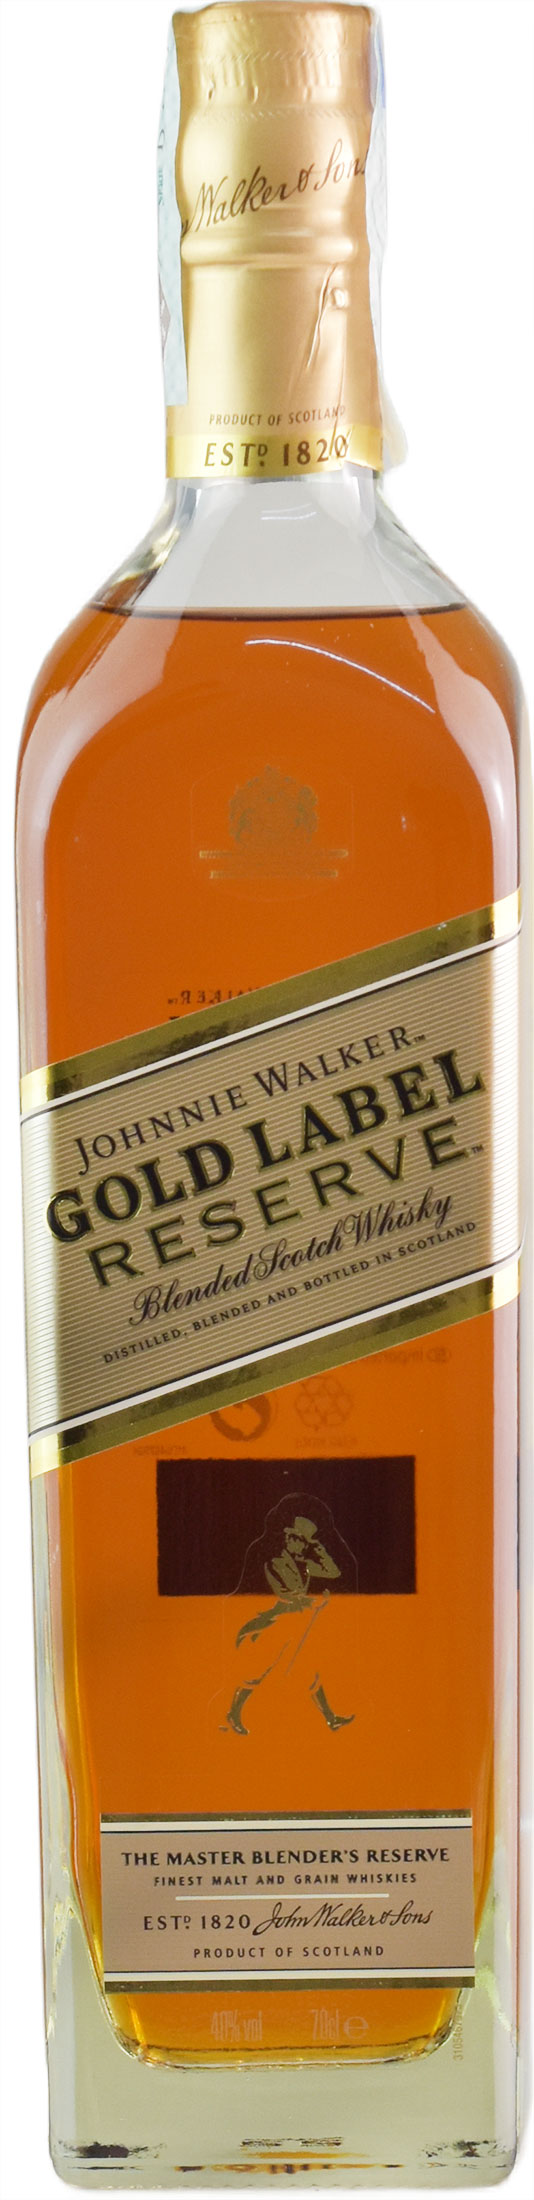 Johnnie Walker Blended Scotch Whisky Gold Label Reserve